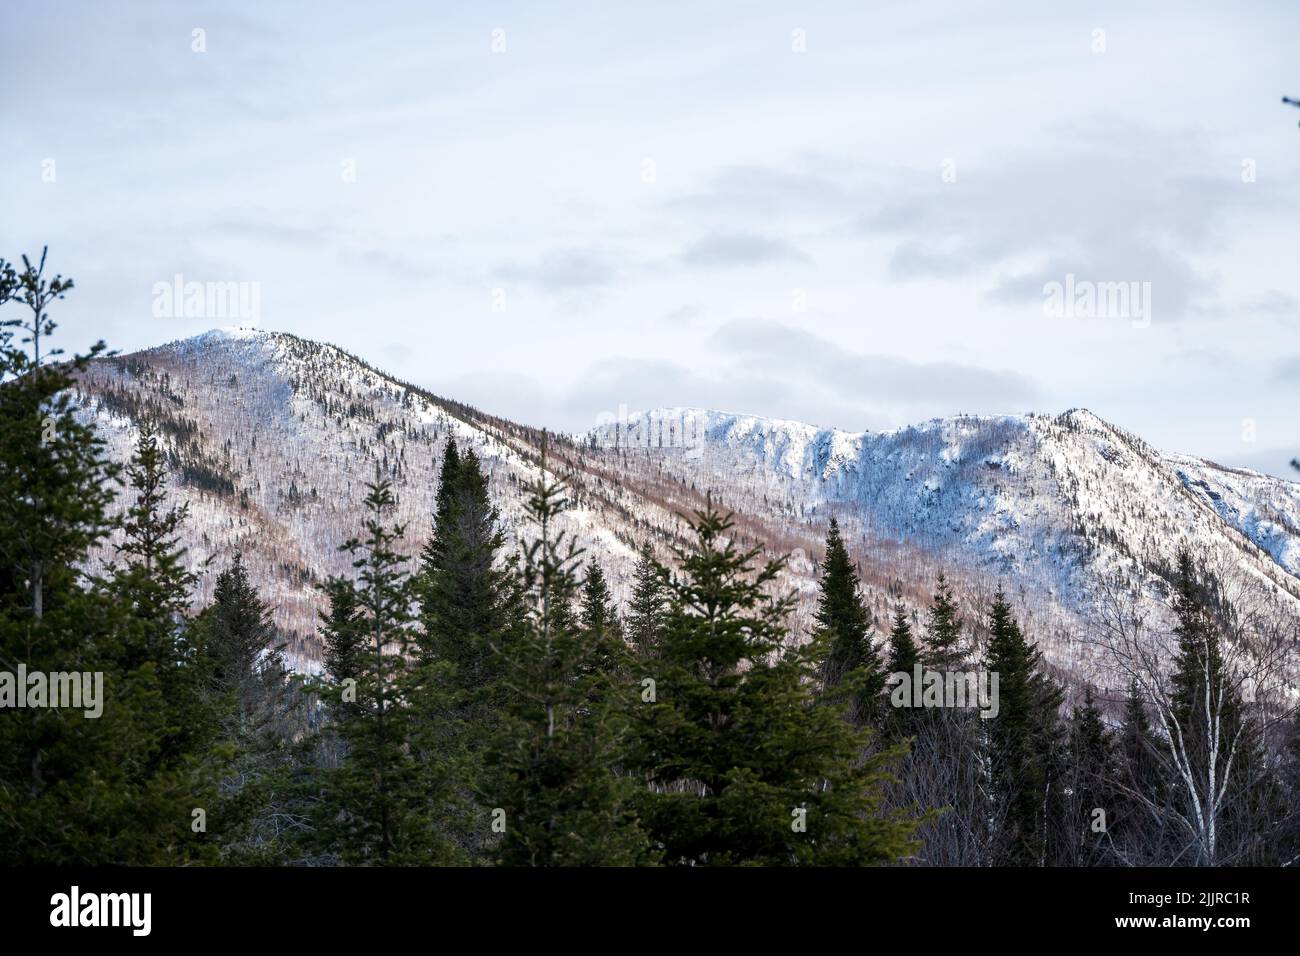 Ein immergrüner Kiefernwald am Berghang, schneebedeckte Berge unter Sonnenlicht und bewölktem Himmel Stockfoto